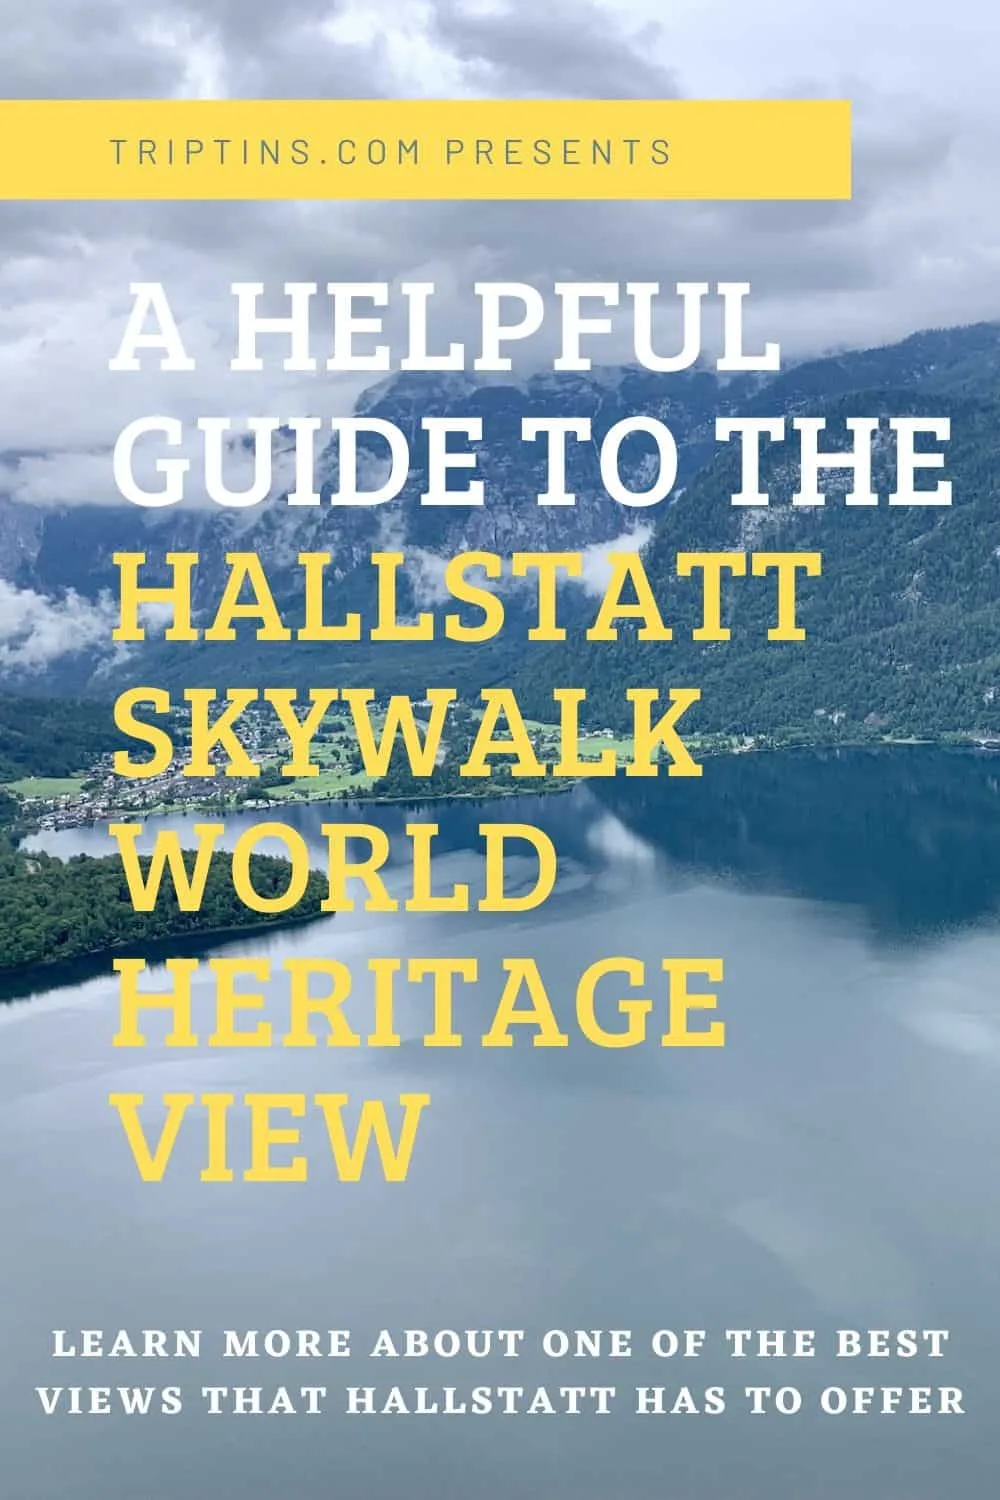 Hallstatt Skywalk World Heritage View Austria